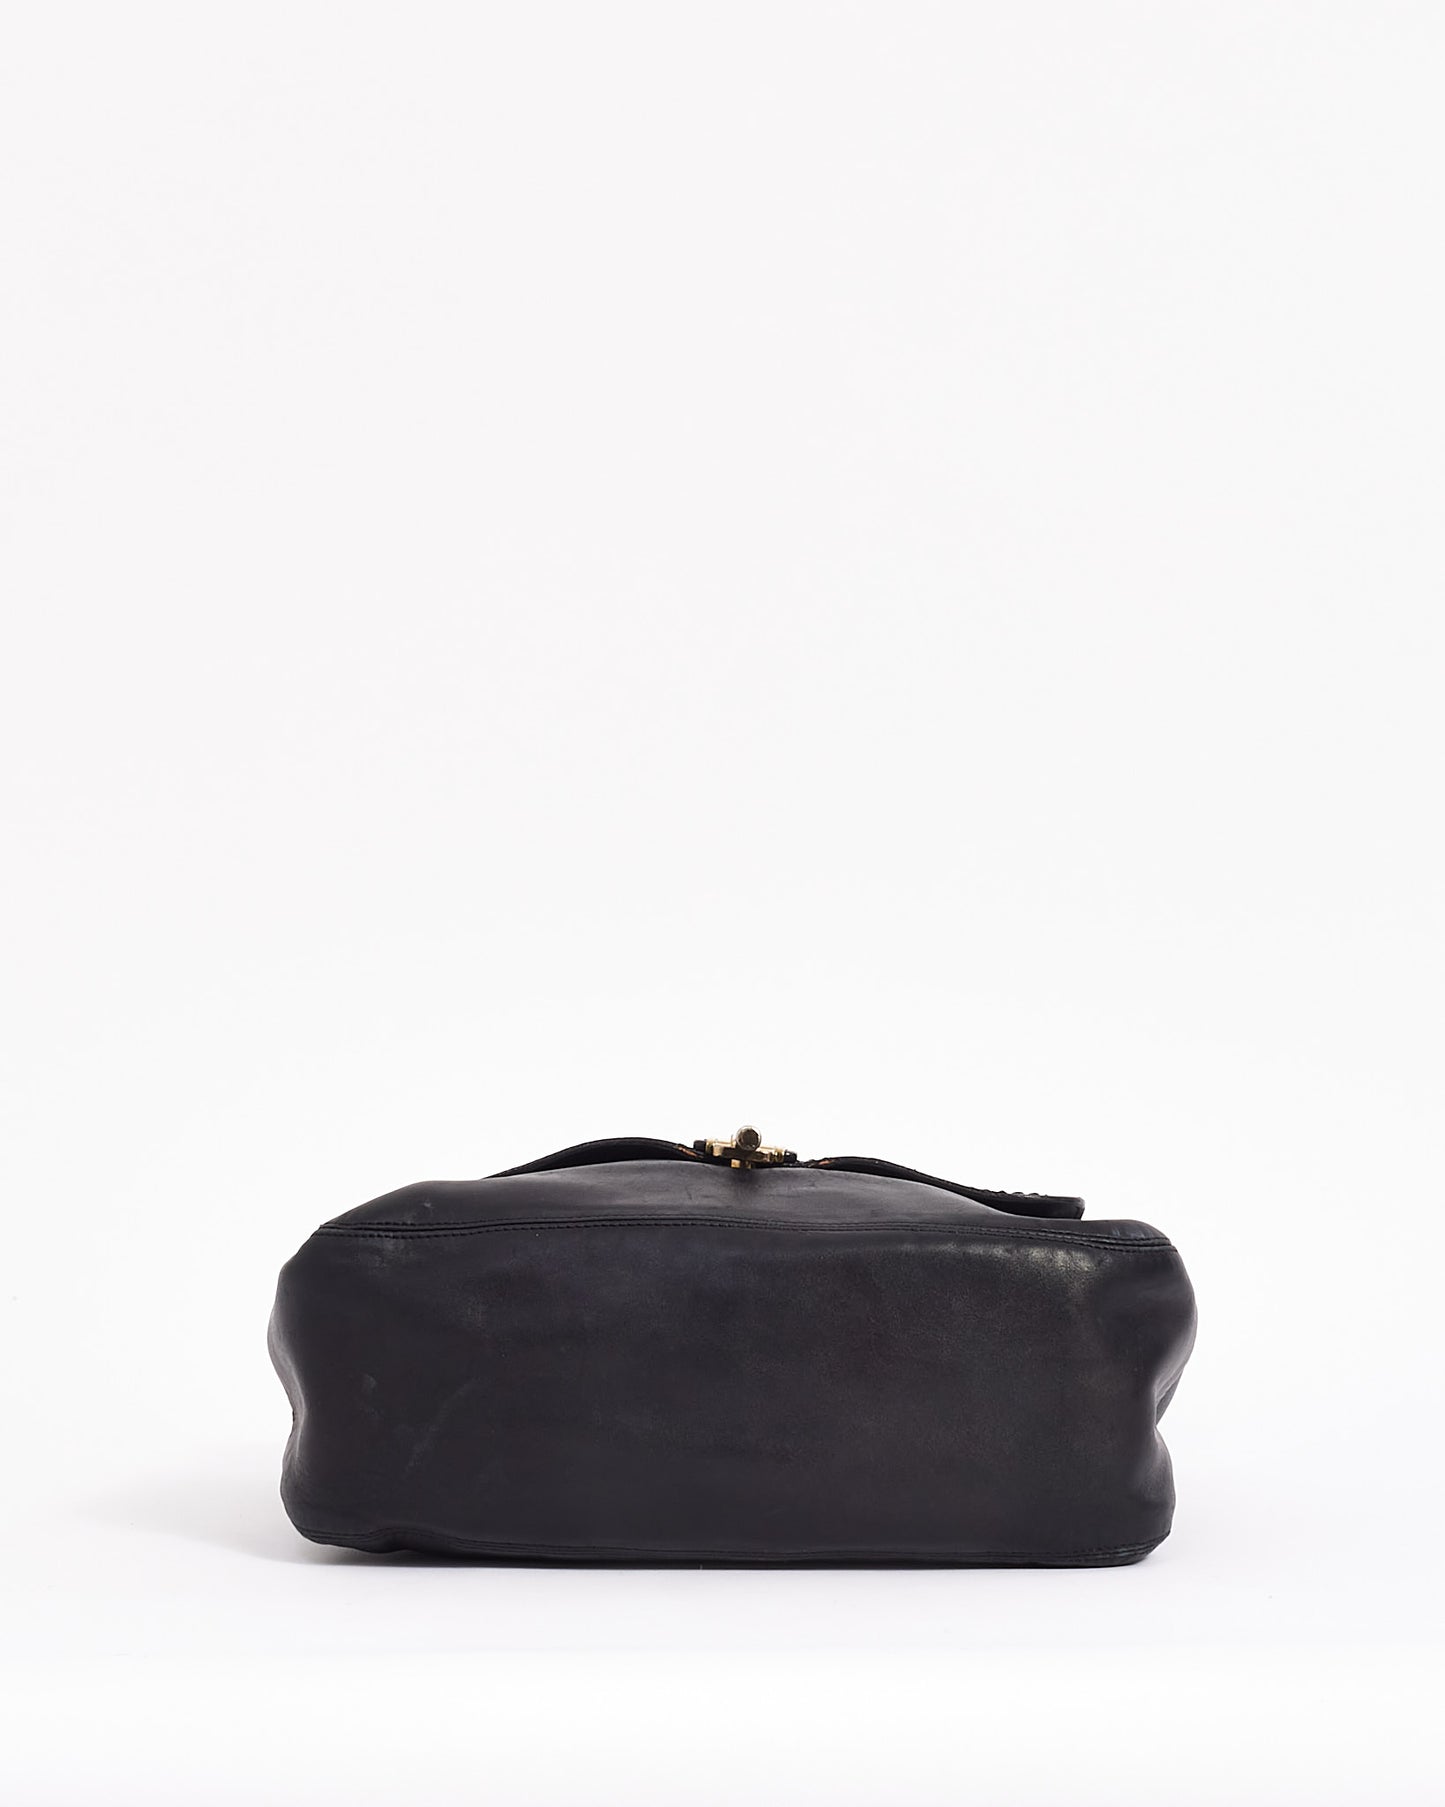 Lanvin Black Leather Shoulder Happy Bag